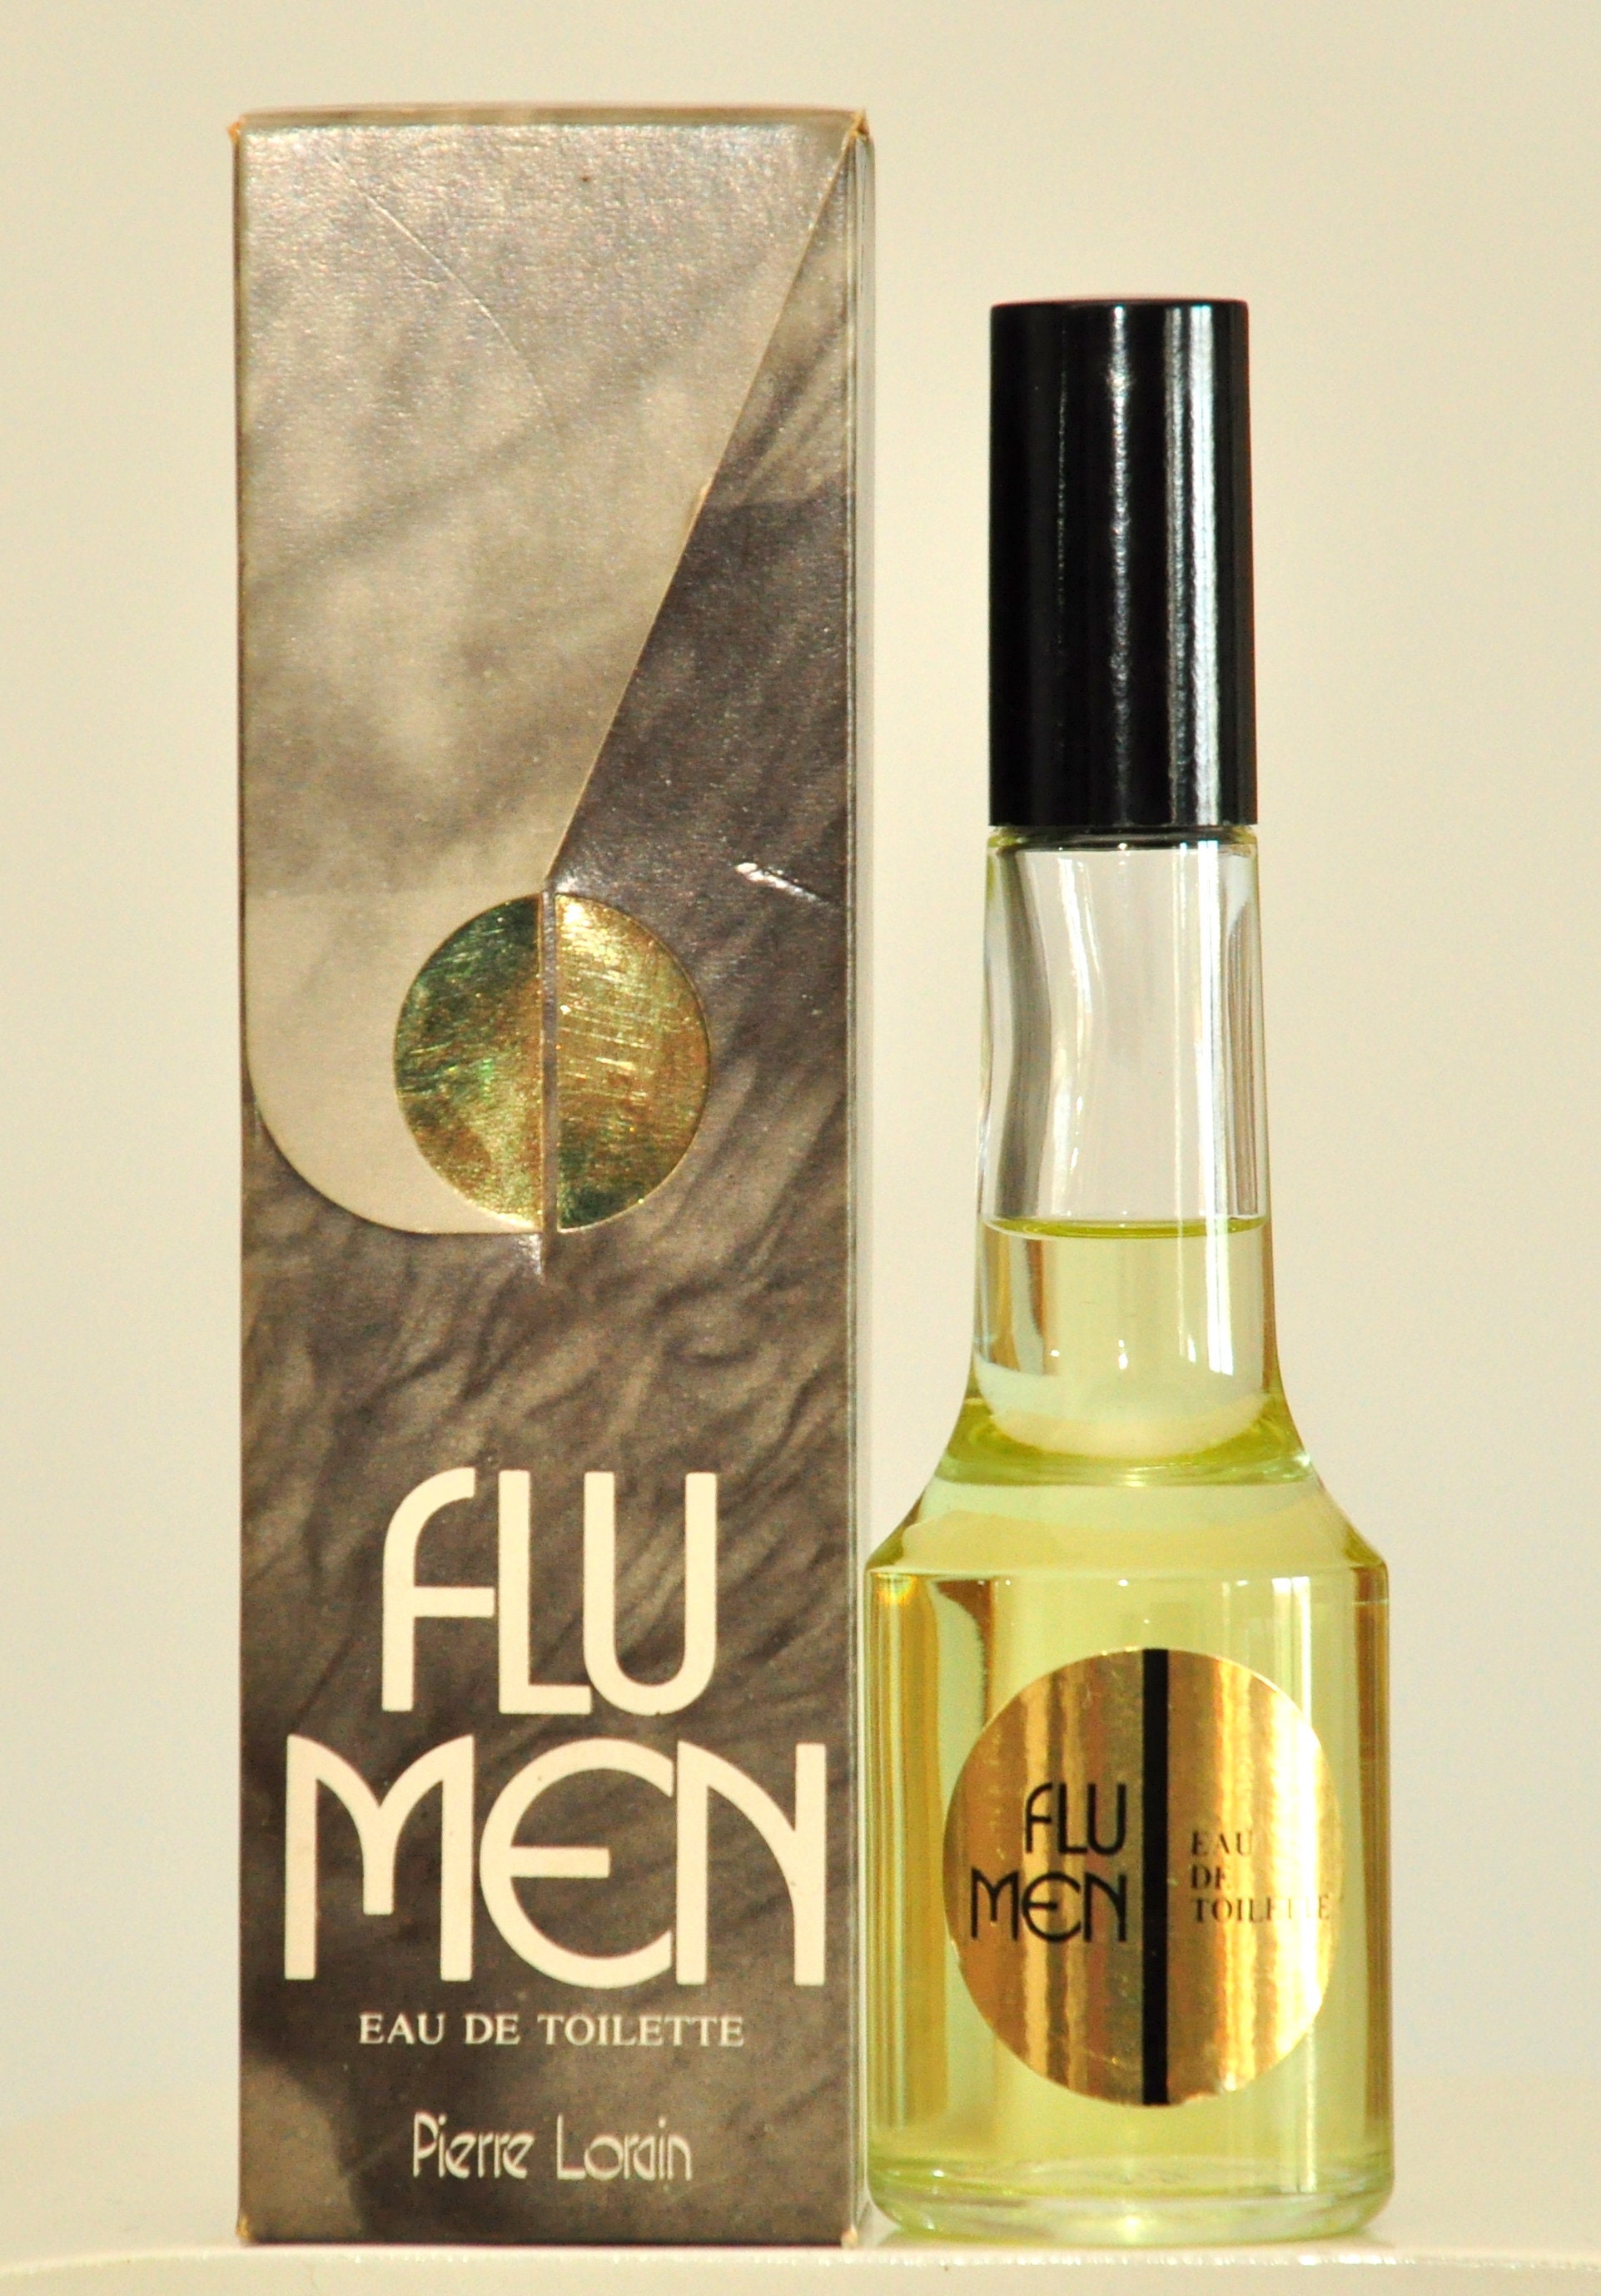 Pierre Lorain Flu Men Eau de Toilette Edt 95ml Splash Parfum Rare Man  Vintage Years 70 - Etsy France